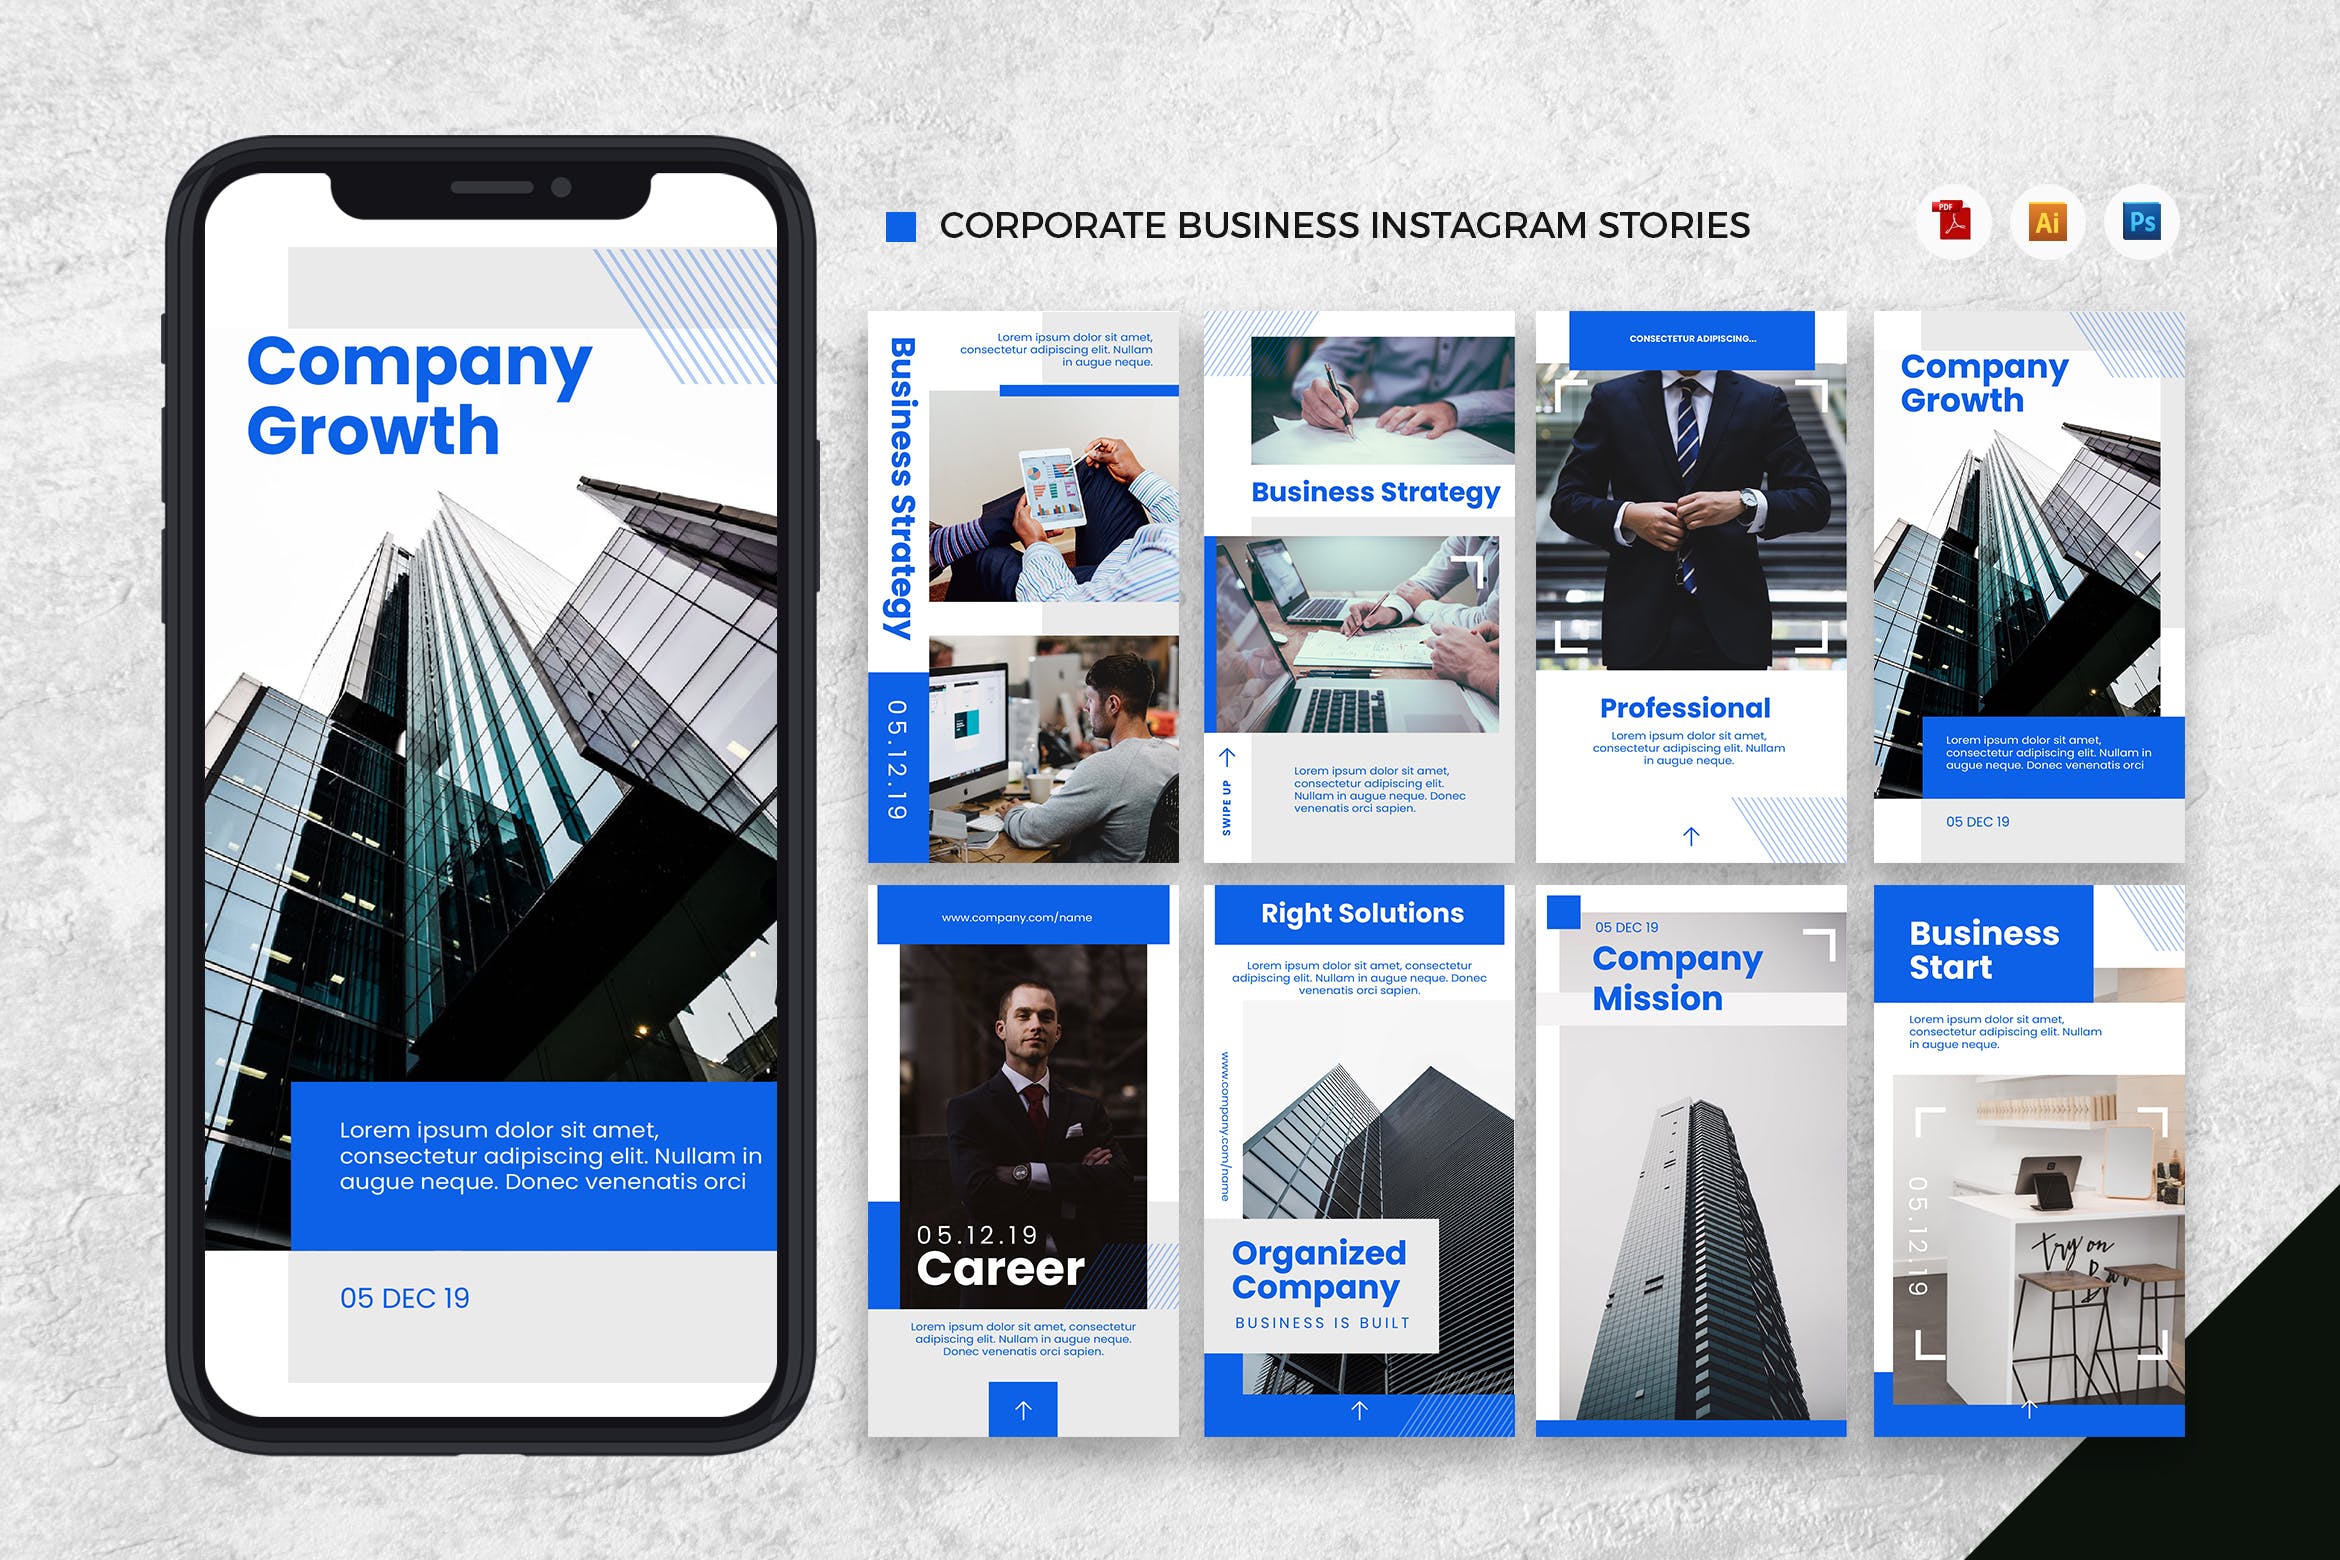 企业品牌Instagram社交宣传设计模板第一素材精选[AI&PSD] Corporate Business Instagram Stories AI and PSD插图